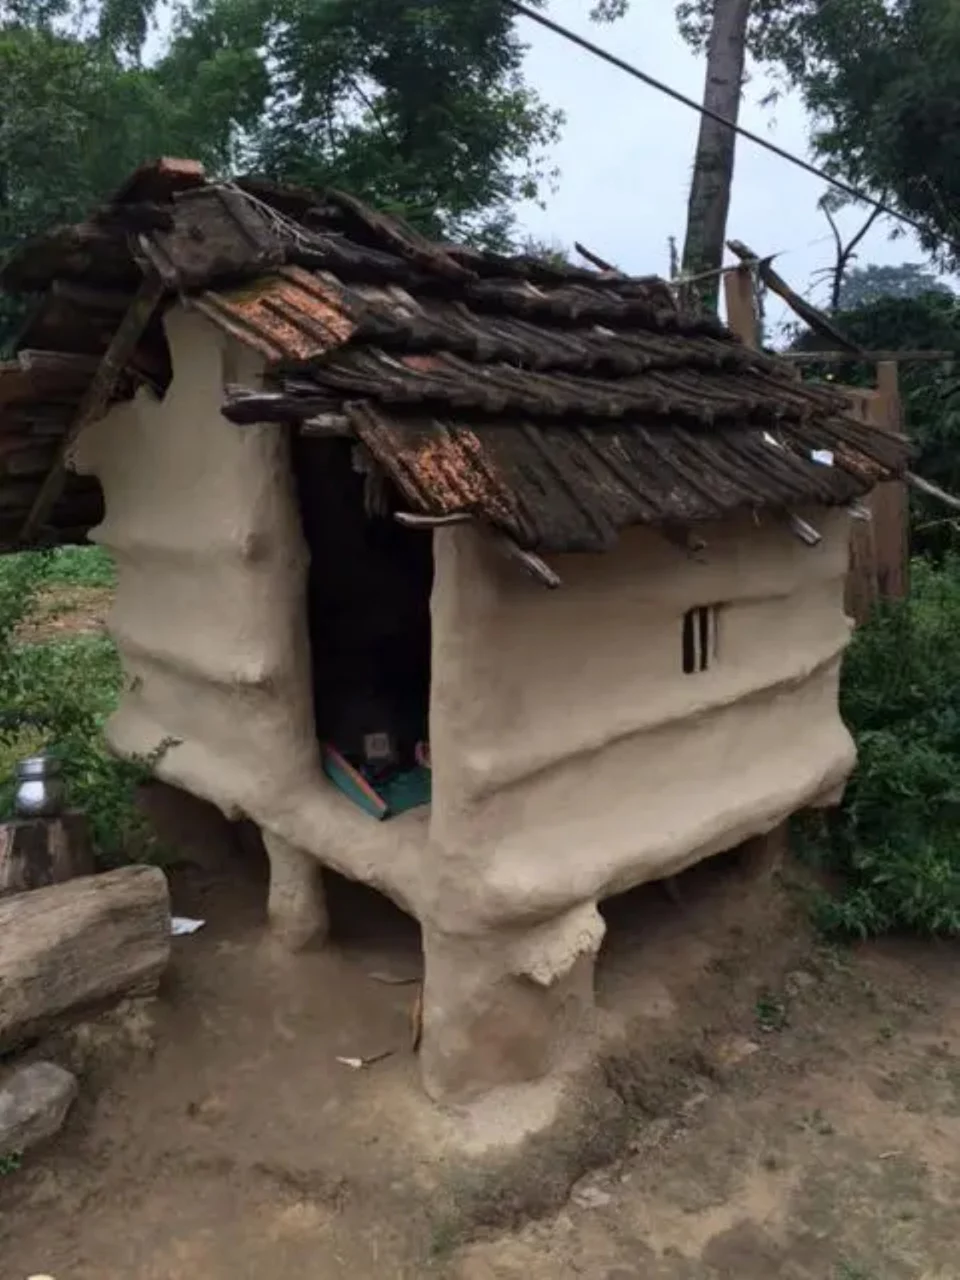 Μία καλύβα που χρησιμοποιείται για το chhaupadi σε αυλή σπιτιού στο Νεπάλ